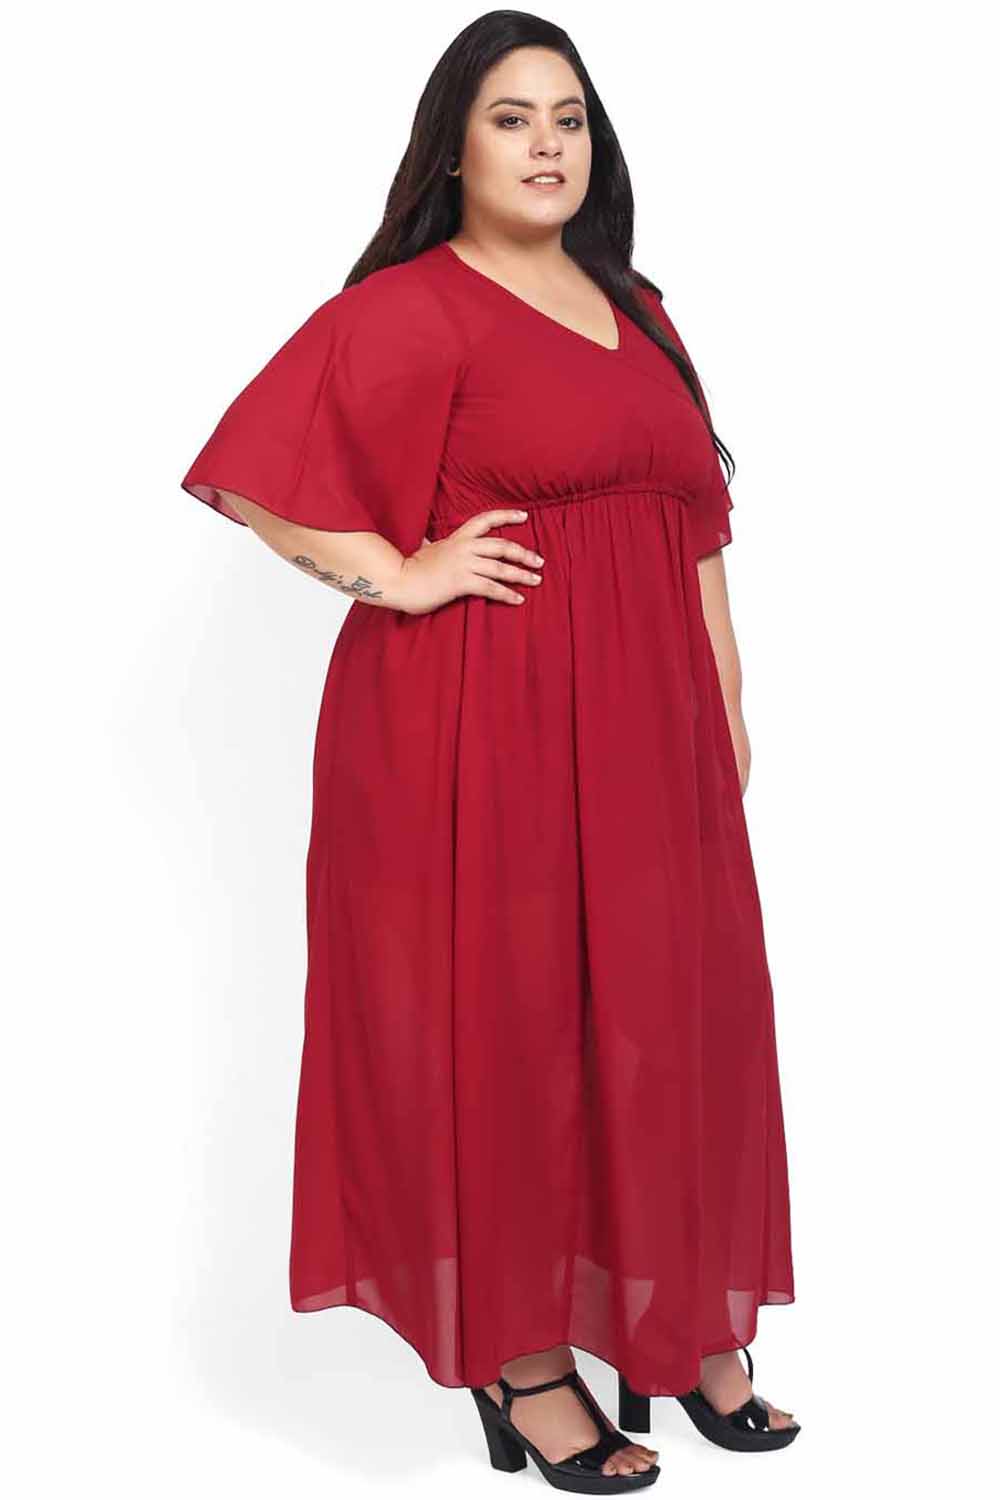 Red Overlap Night Dress (Inner Not Included) for Women